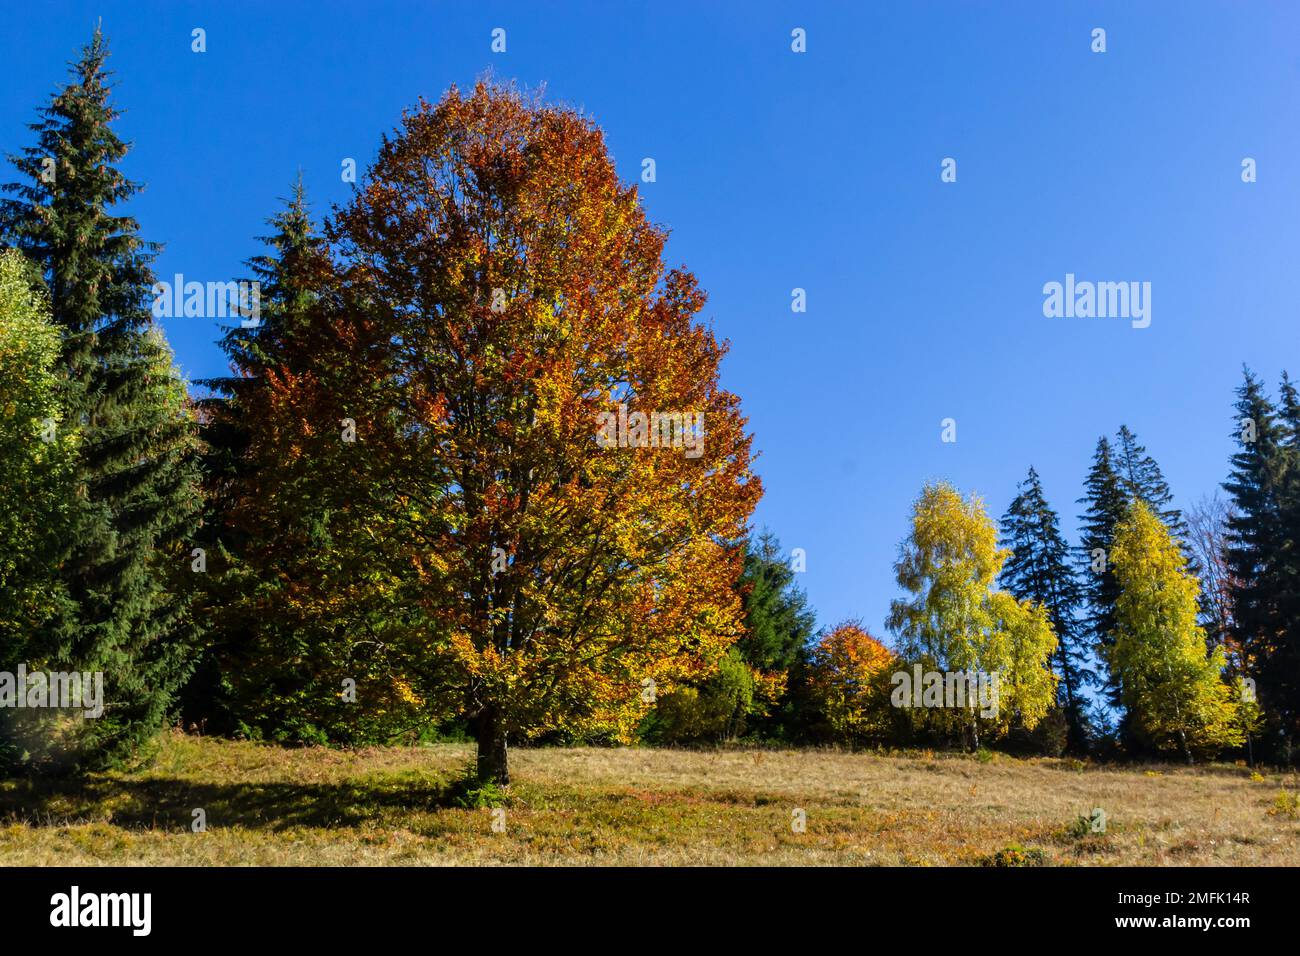 Paisaje colorido con árboles de otoño y casas rurales en las laderas y en el valle en el pueblo de montaña. Montañas de los Cárpatos, Ucrania. Foto de stock